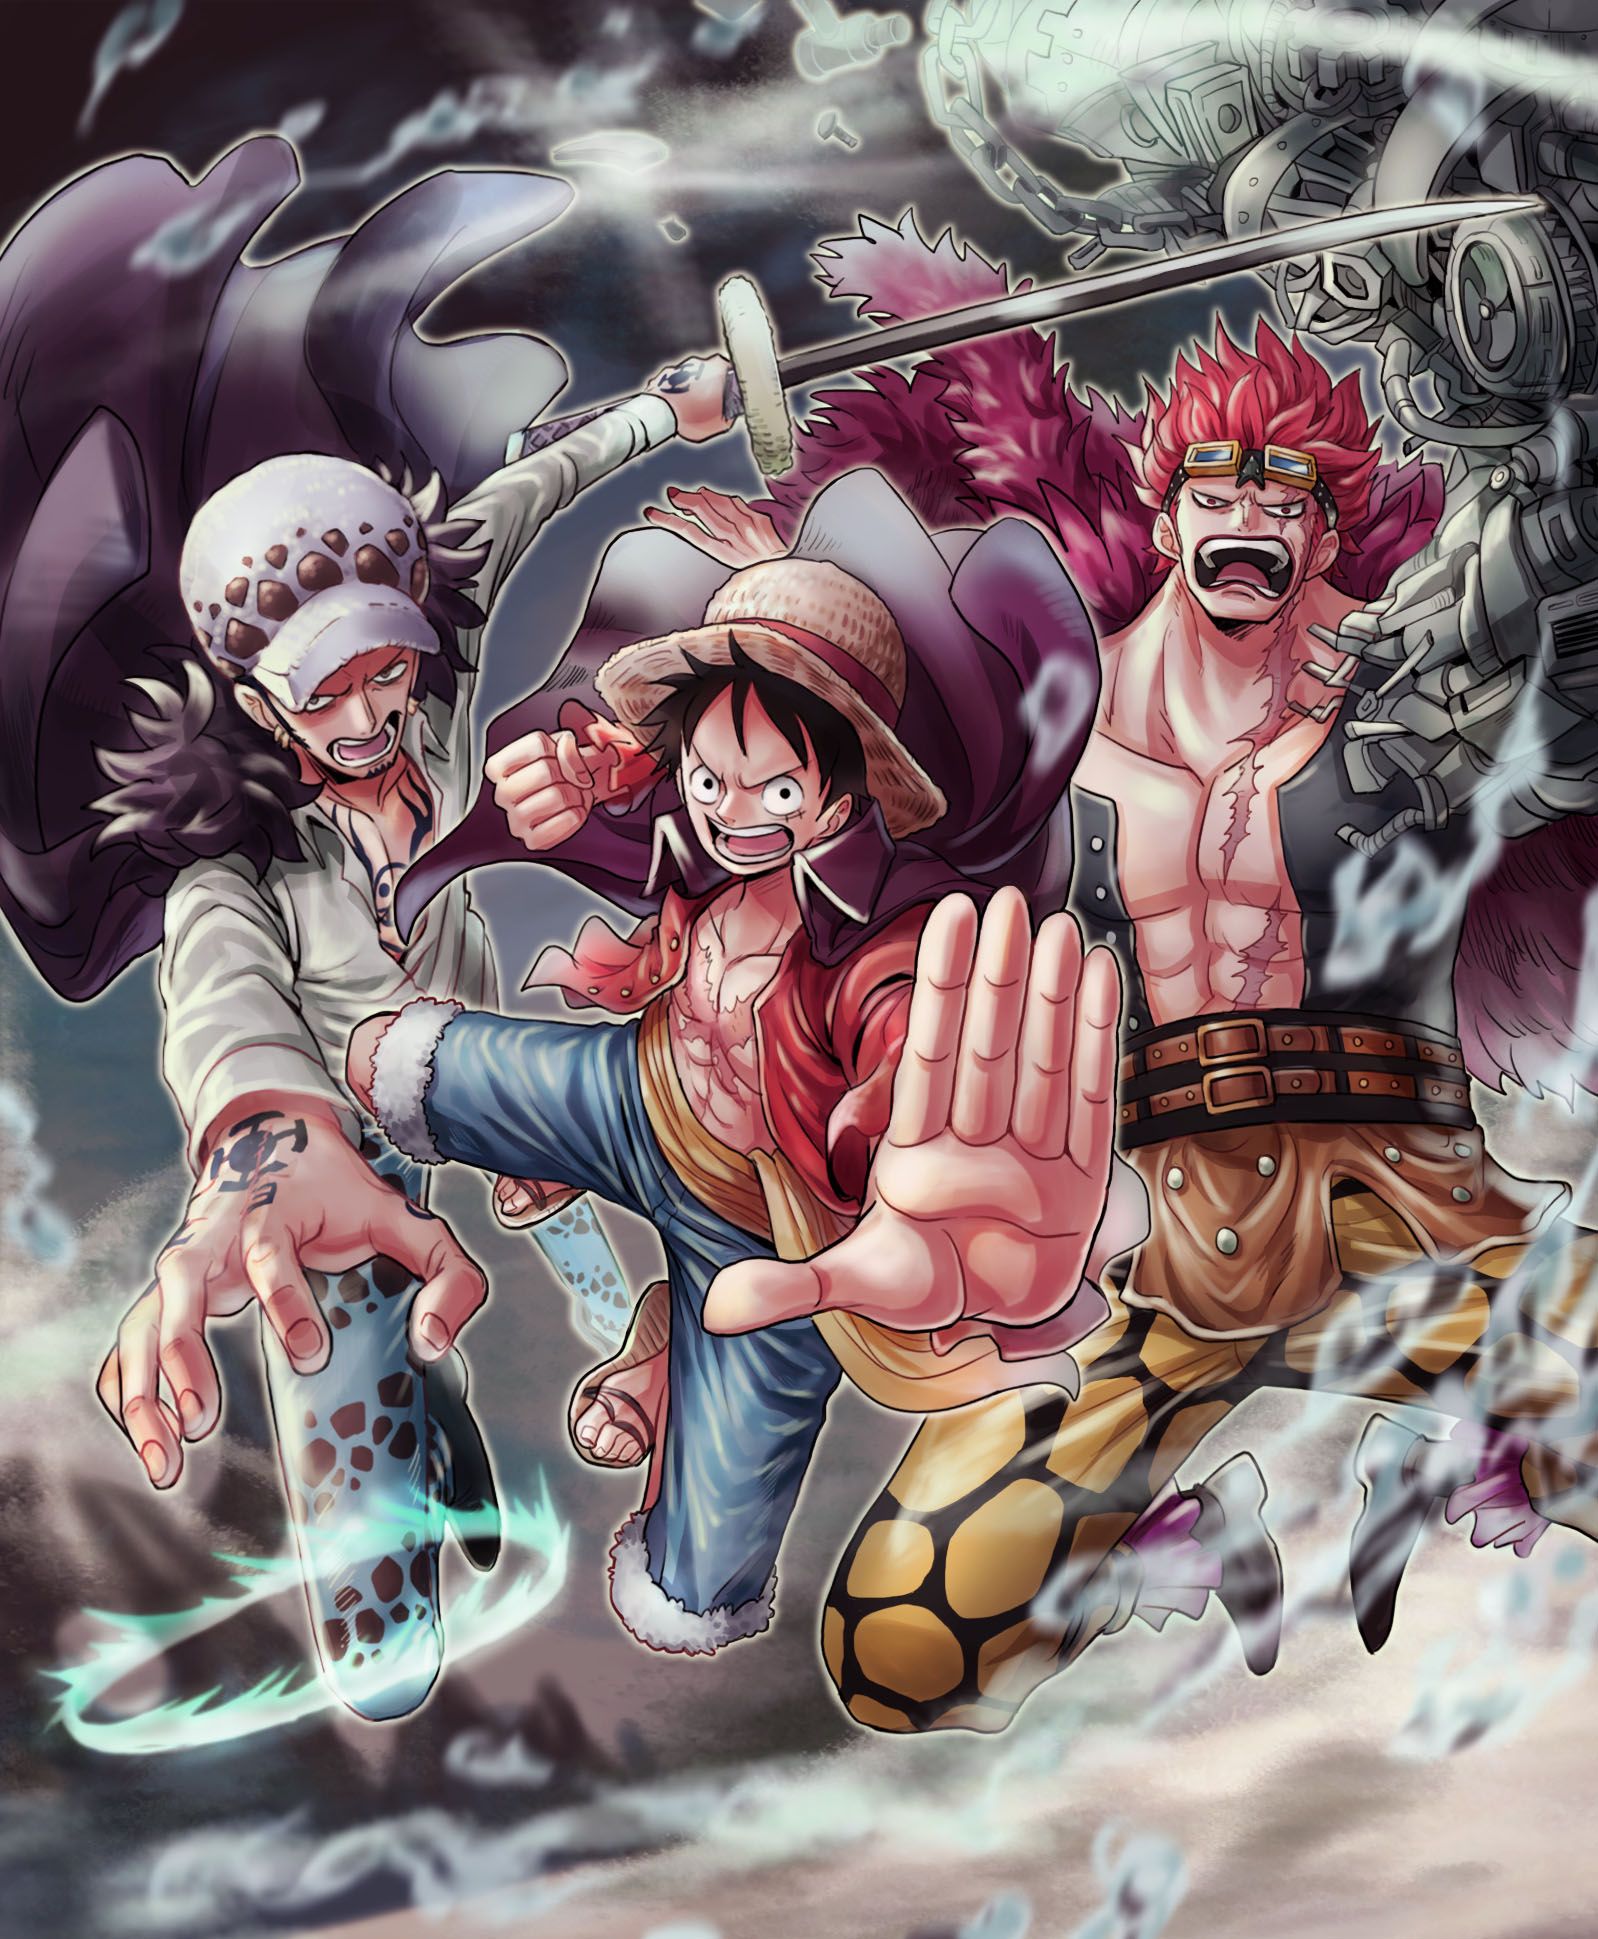 Liên minh 2 Tứ Hoàng - những quân bài số một trong bộ truyện One Piece, với sức mạnh và kỹ năng chiến đấu không thể bỏ qua. Nếu bạn muốn tìm hiểu thêm về những trận đấu đỉnh cao và sự cạnh tranh giữa các Tứ Hoàng, hãy xem ngay hình ảnh!